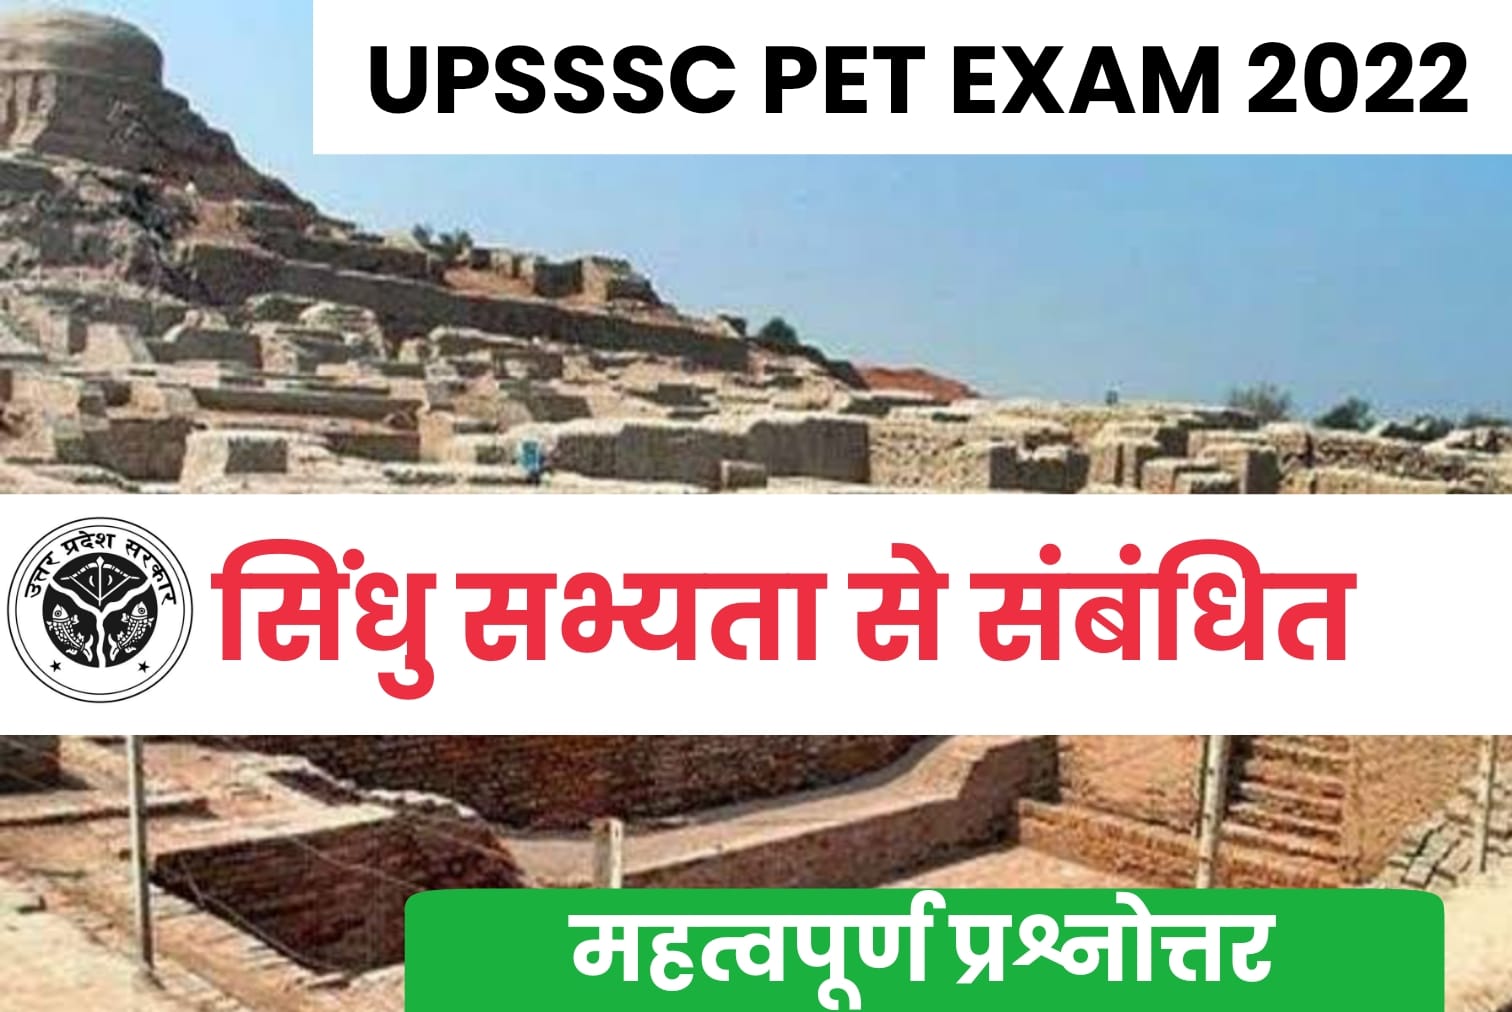 UPSSSC PET EXAM 2022 | जाते-जाते जरूर कर लें सिंधु सभ्यता से जुड़े इन महत्वपूर्ण सवालों का अध्ययन